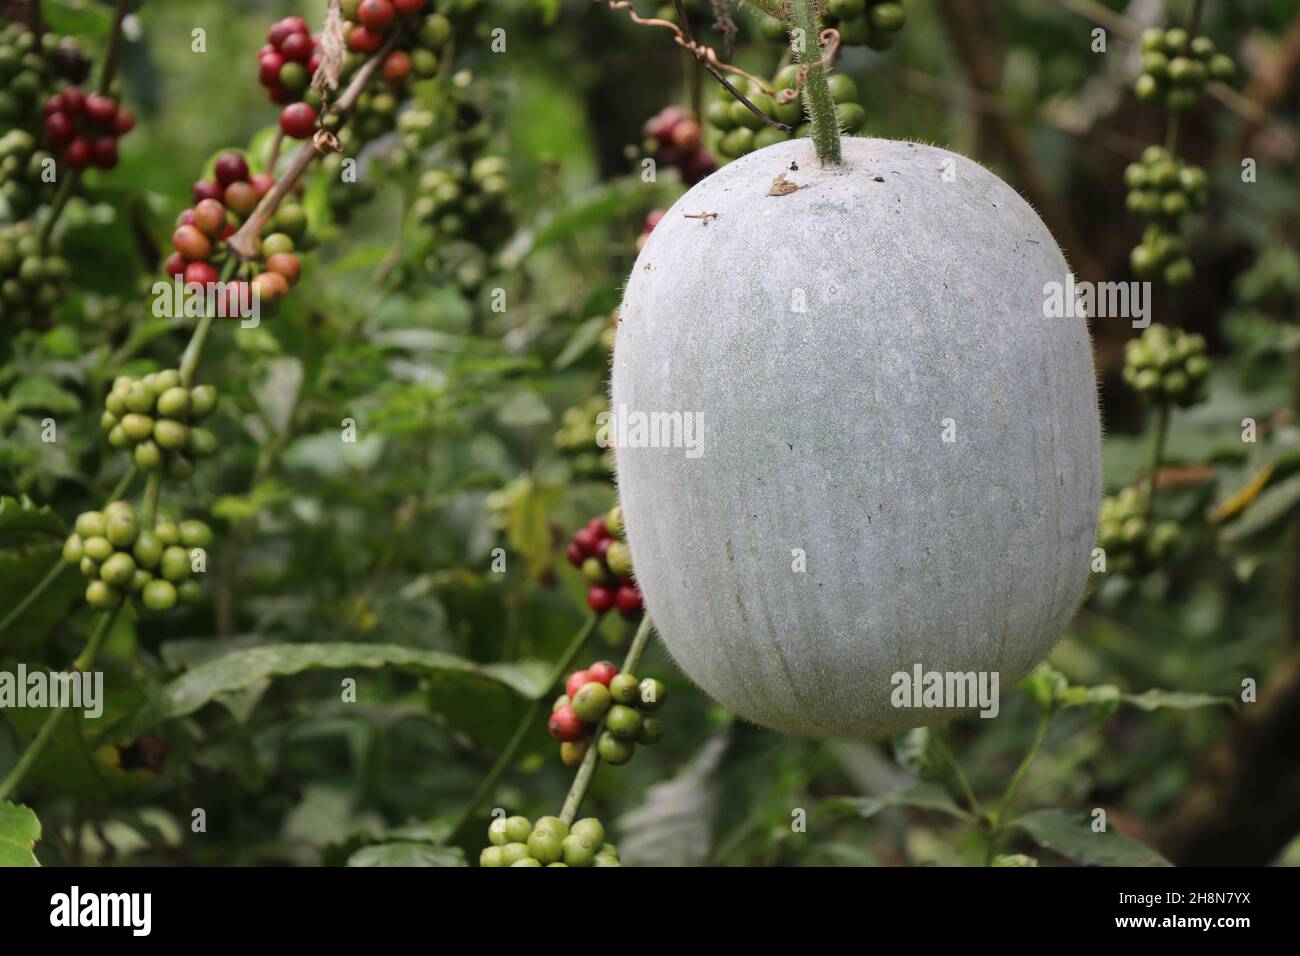 Wintermelone oder Aschekürbis ist eine sambar Zutat in indischen Lebensmitteln, die auf einer Pflanze, Benincasa hispida oder Aschemelone wachsen Stockfoto